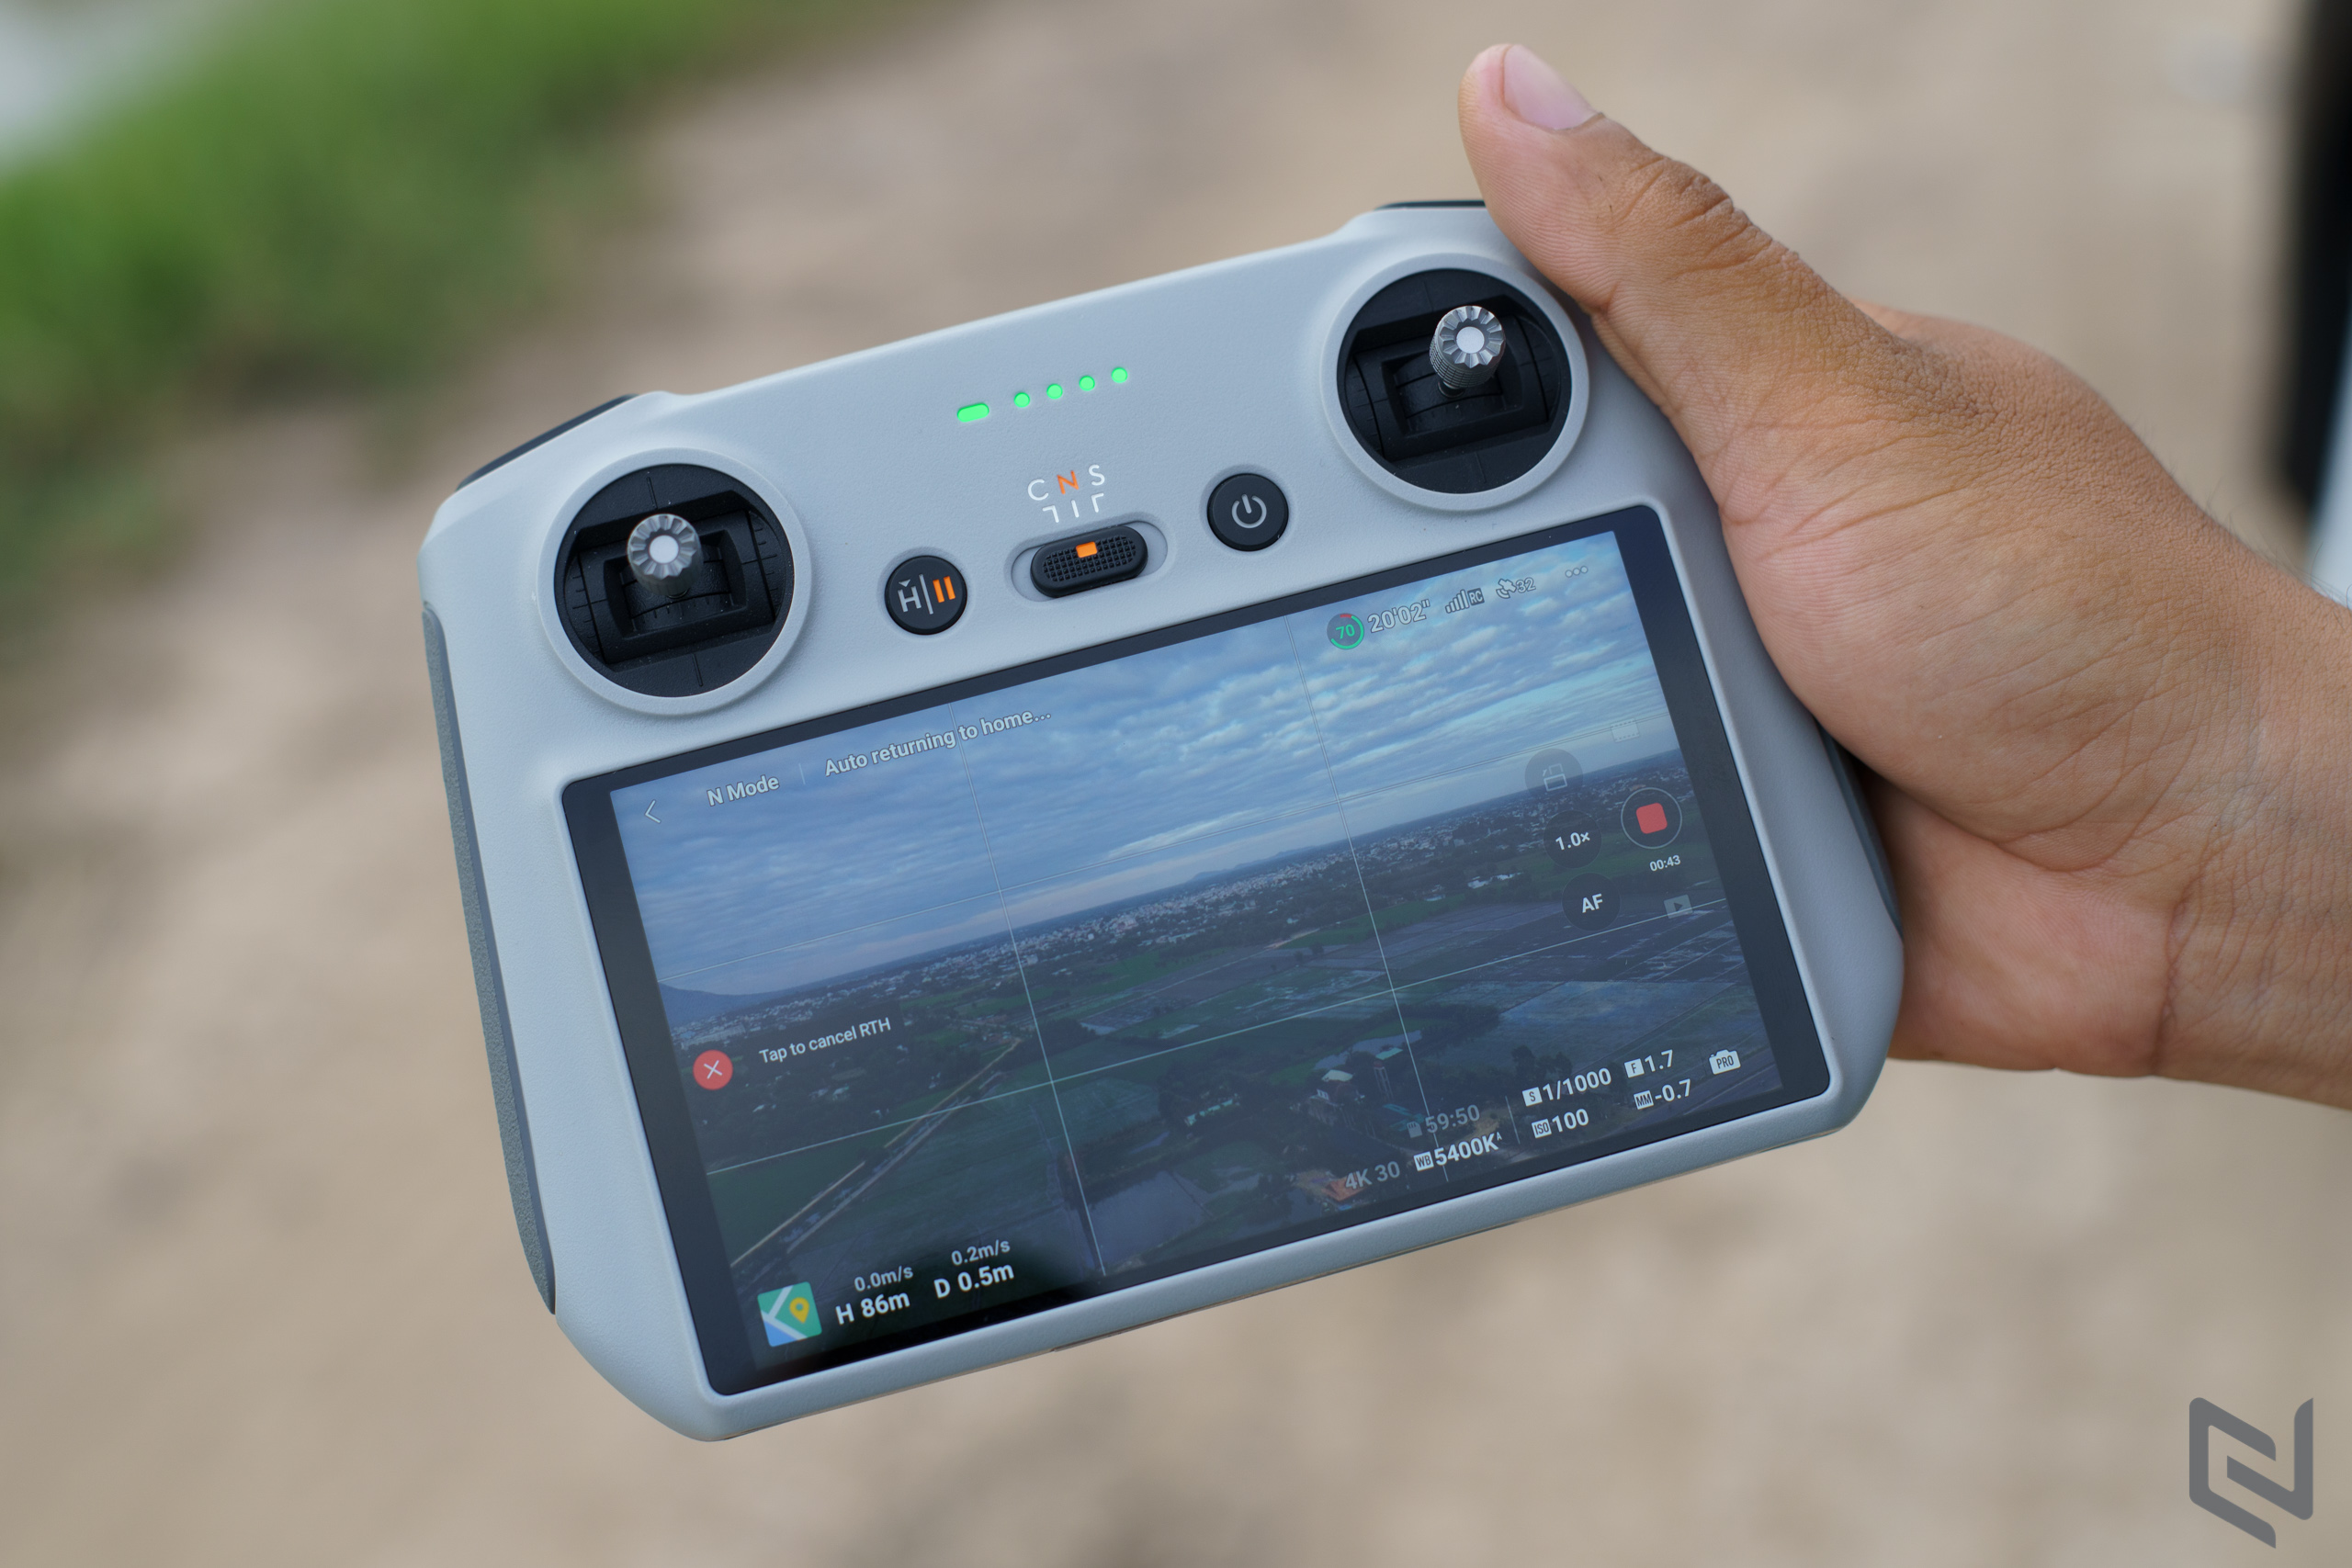 Trải nghiệm DJI Mini 3, lựa chọn flycam dễ tiếp cận cho người mới